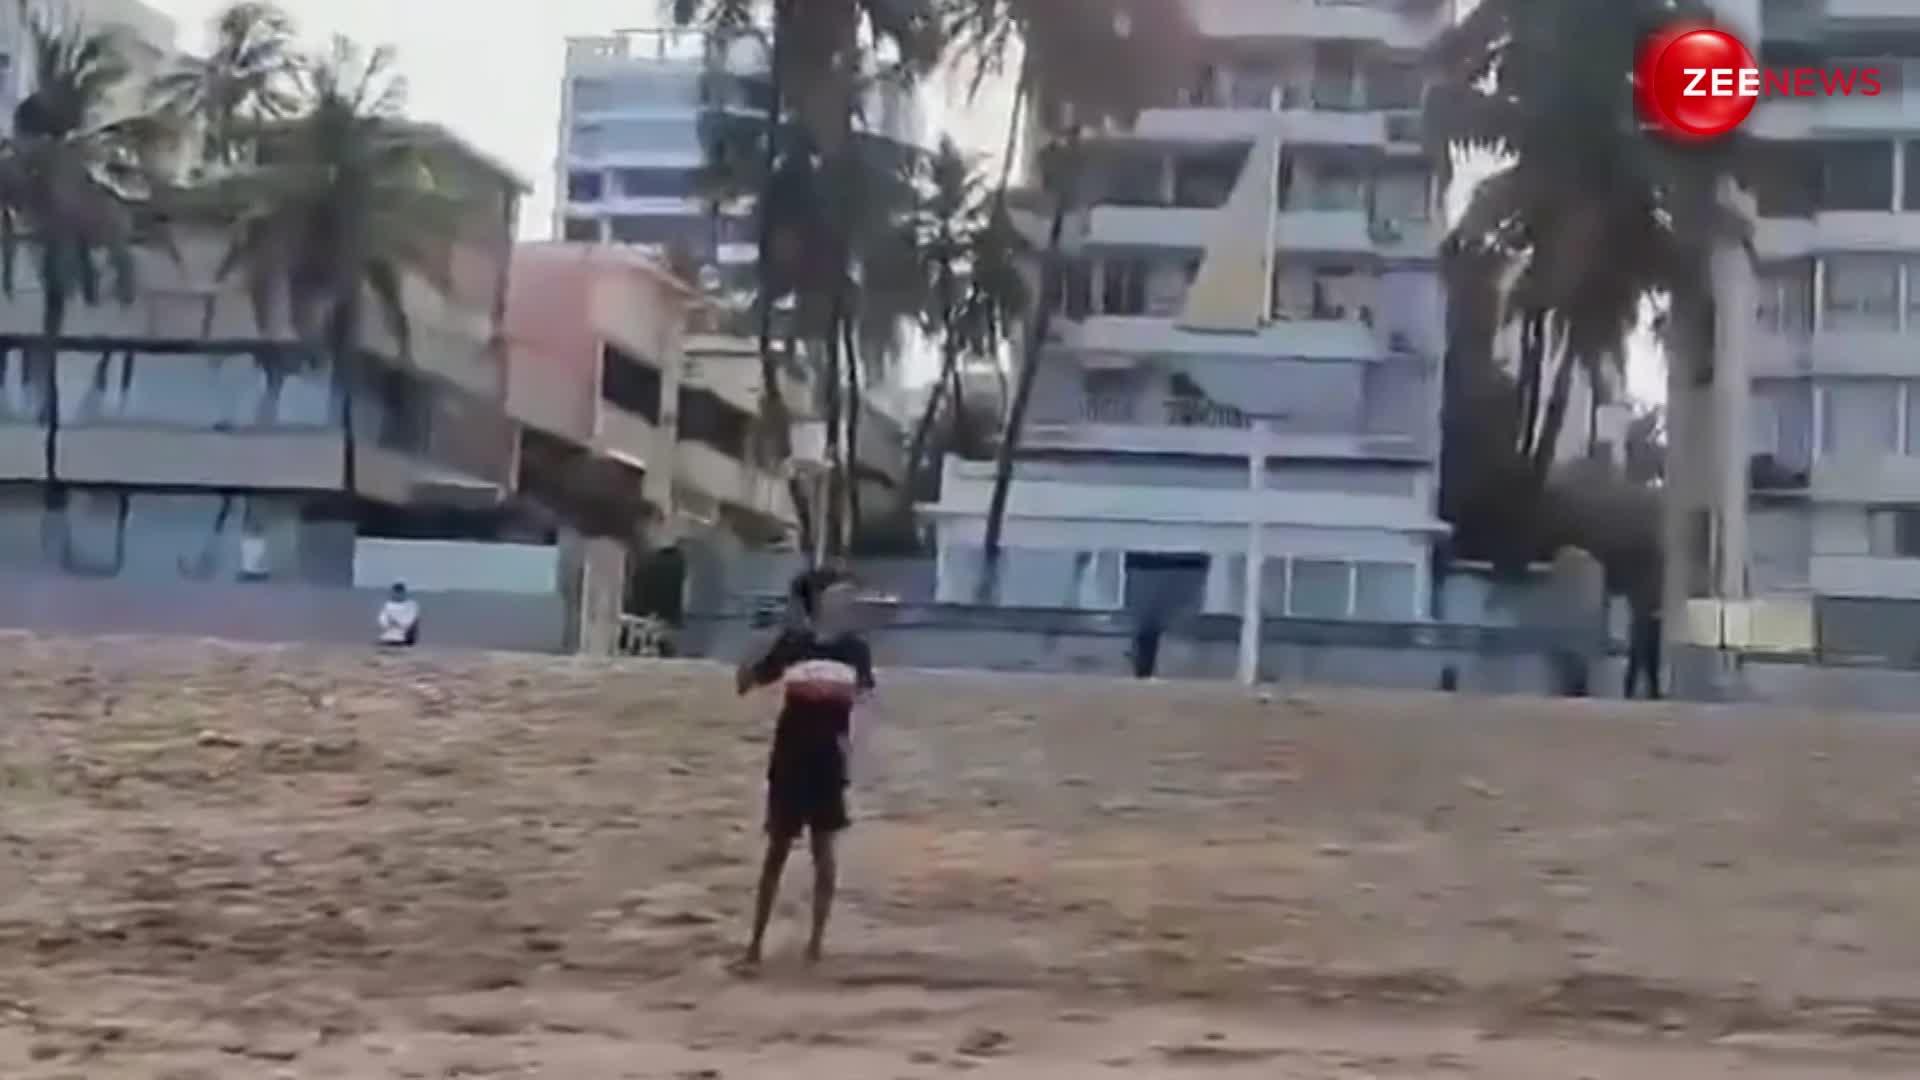 मुंबई दौरे के दौरान बीच के किनारे बच्चों के साथ क्रिकेट खेलते दिखे CM Pushar Singh Dhami, वायरल हुआ वीडियो